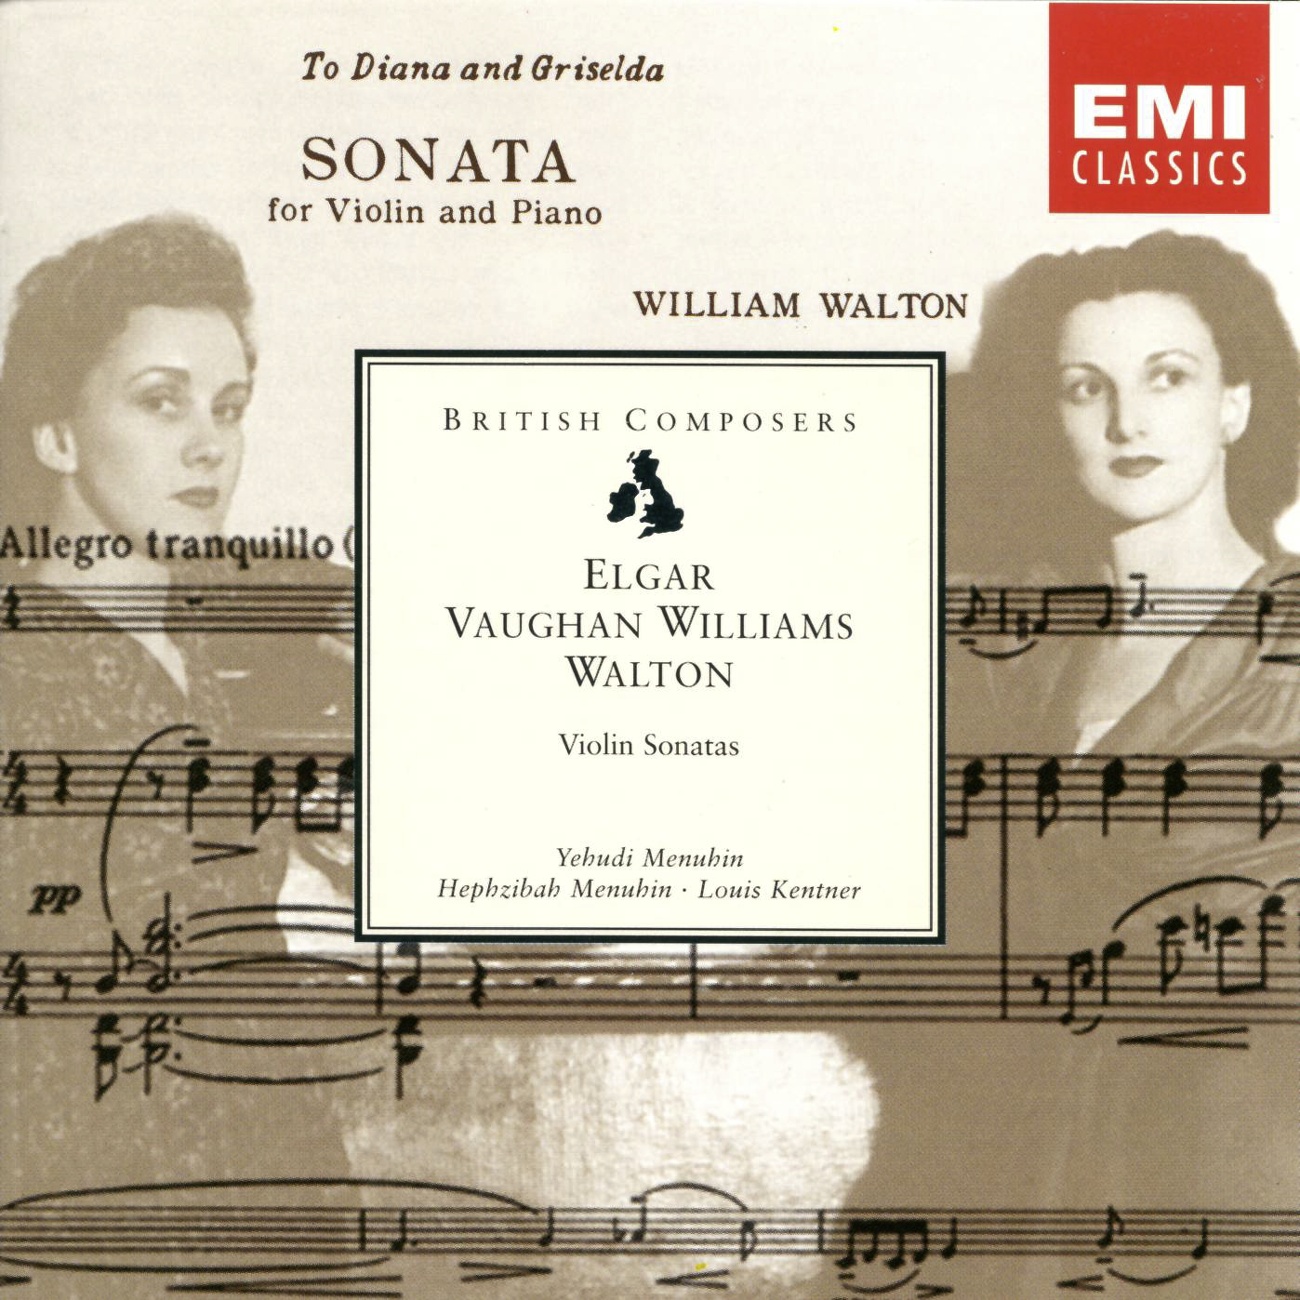 Vatiation II (Violin Sonata, Movement 3c)